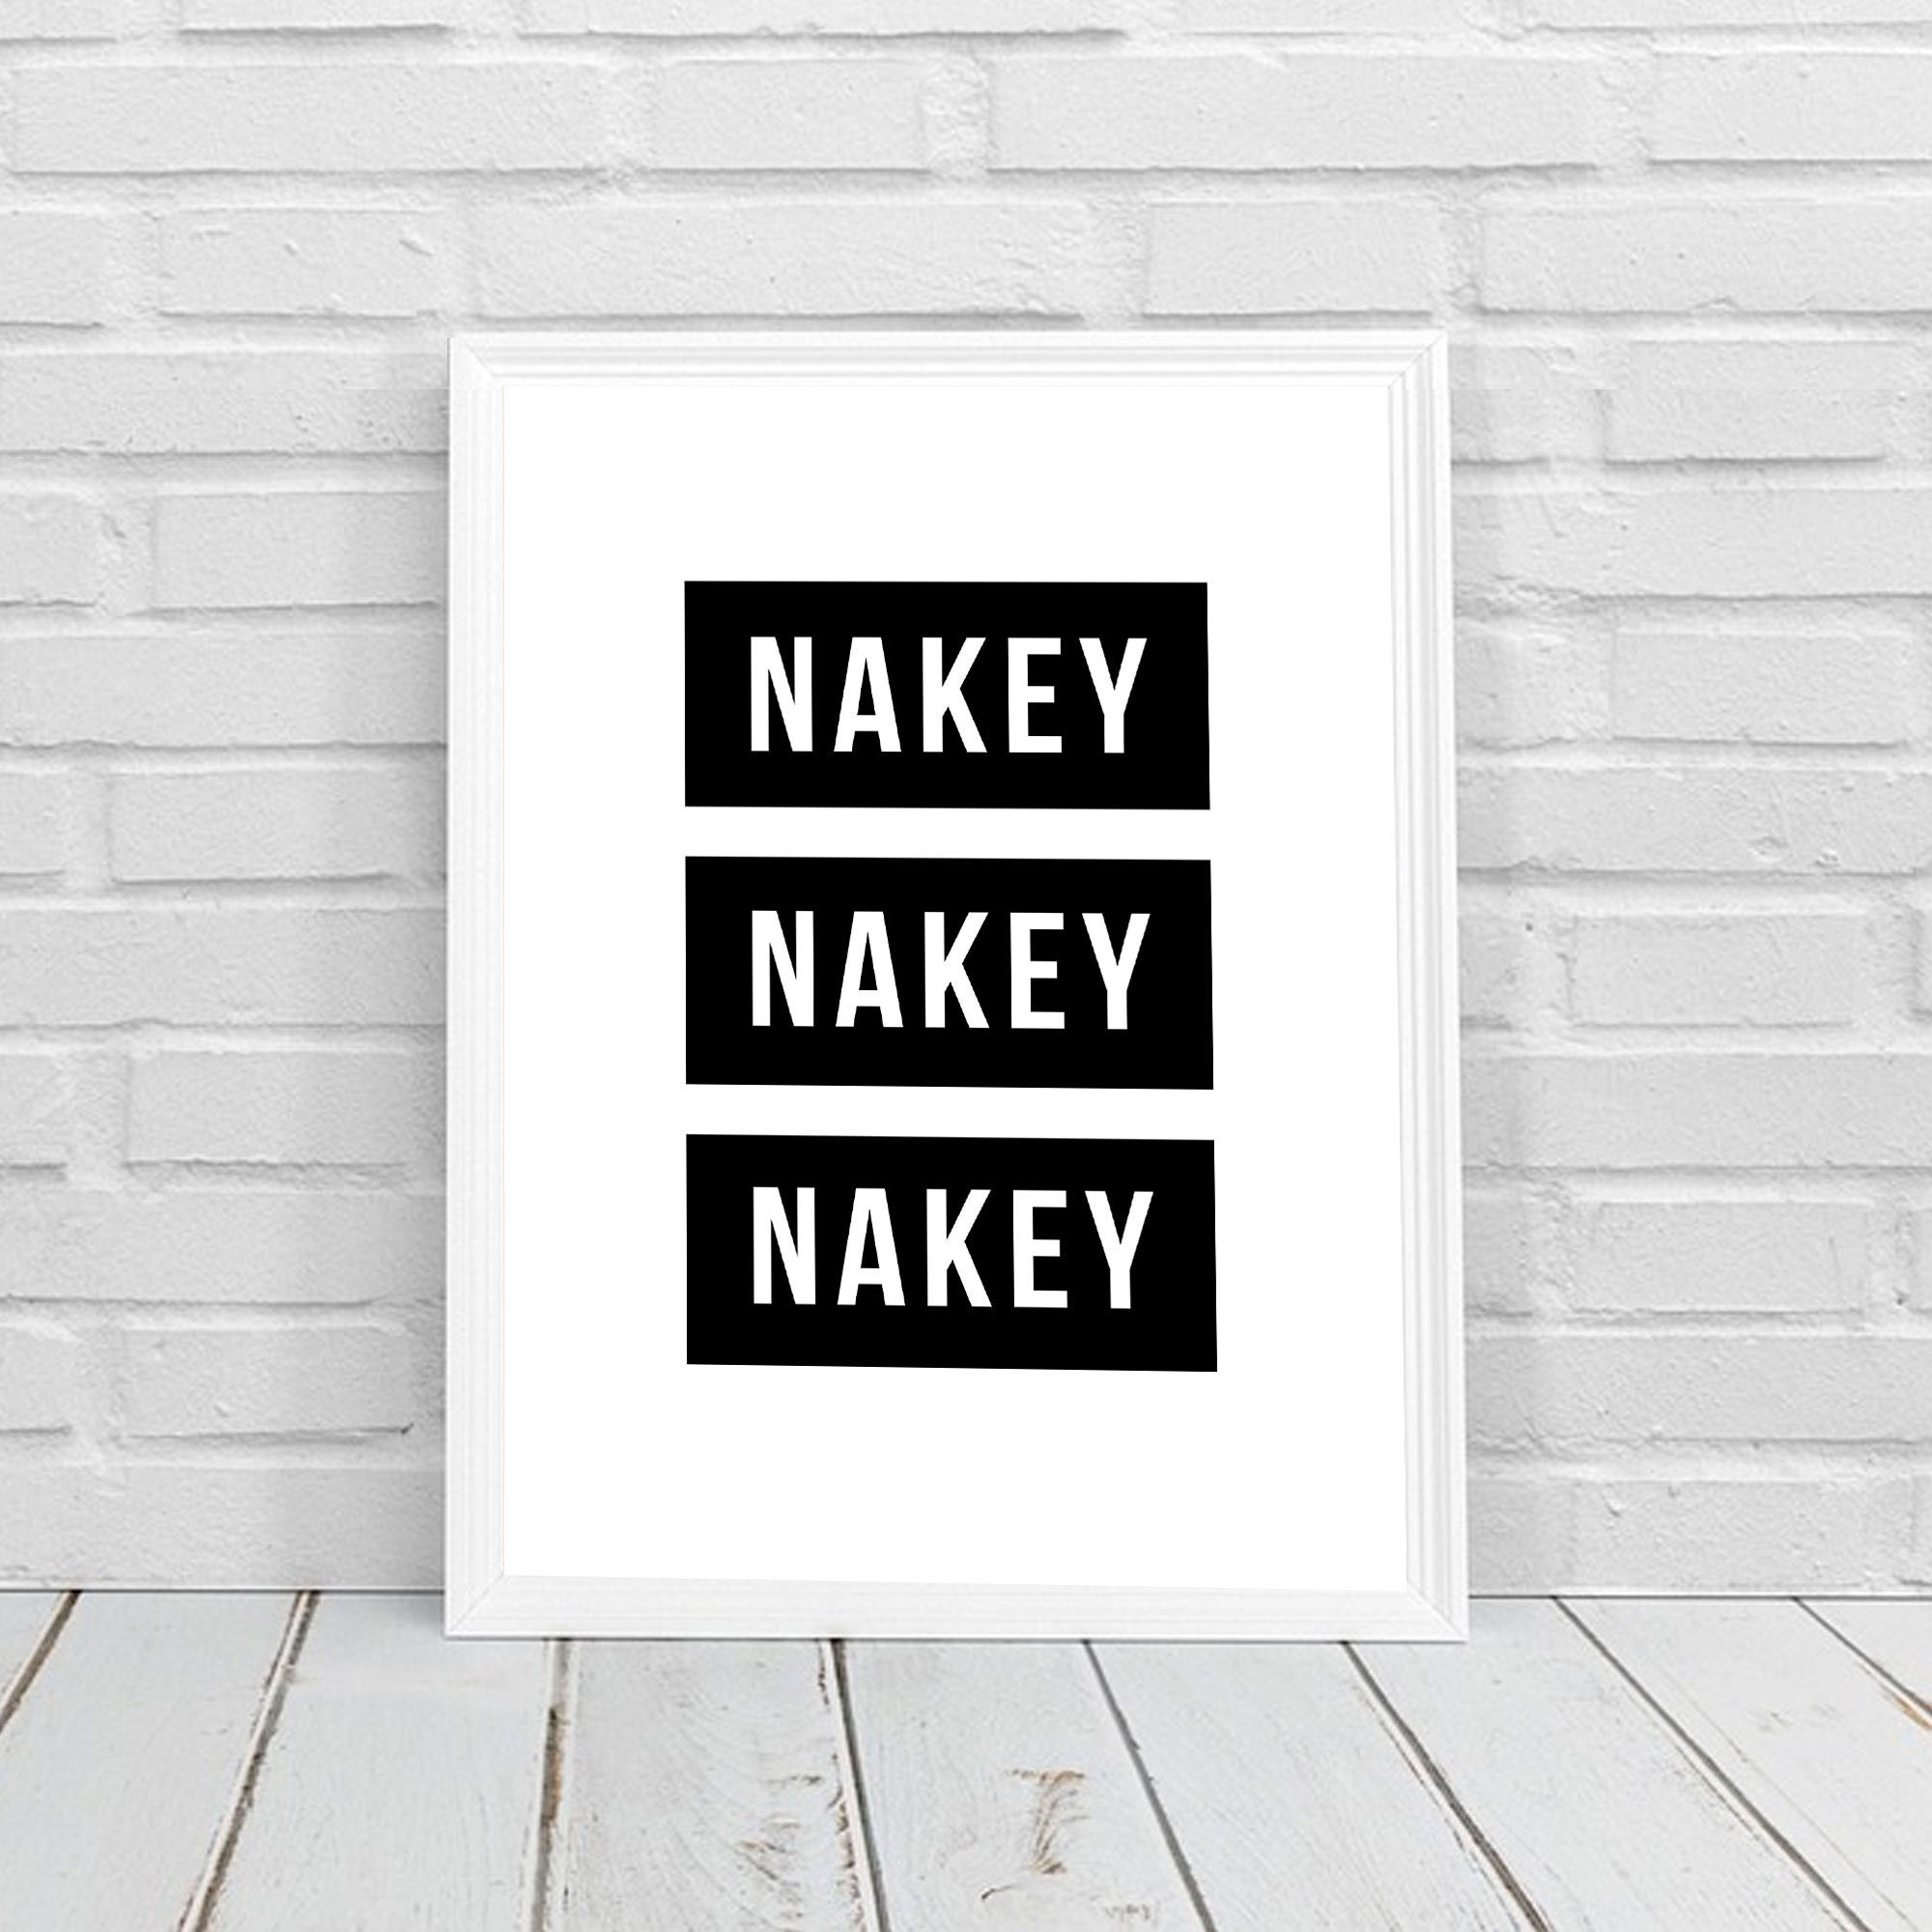 Nakey Nakey Nakey A5.